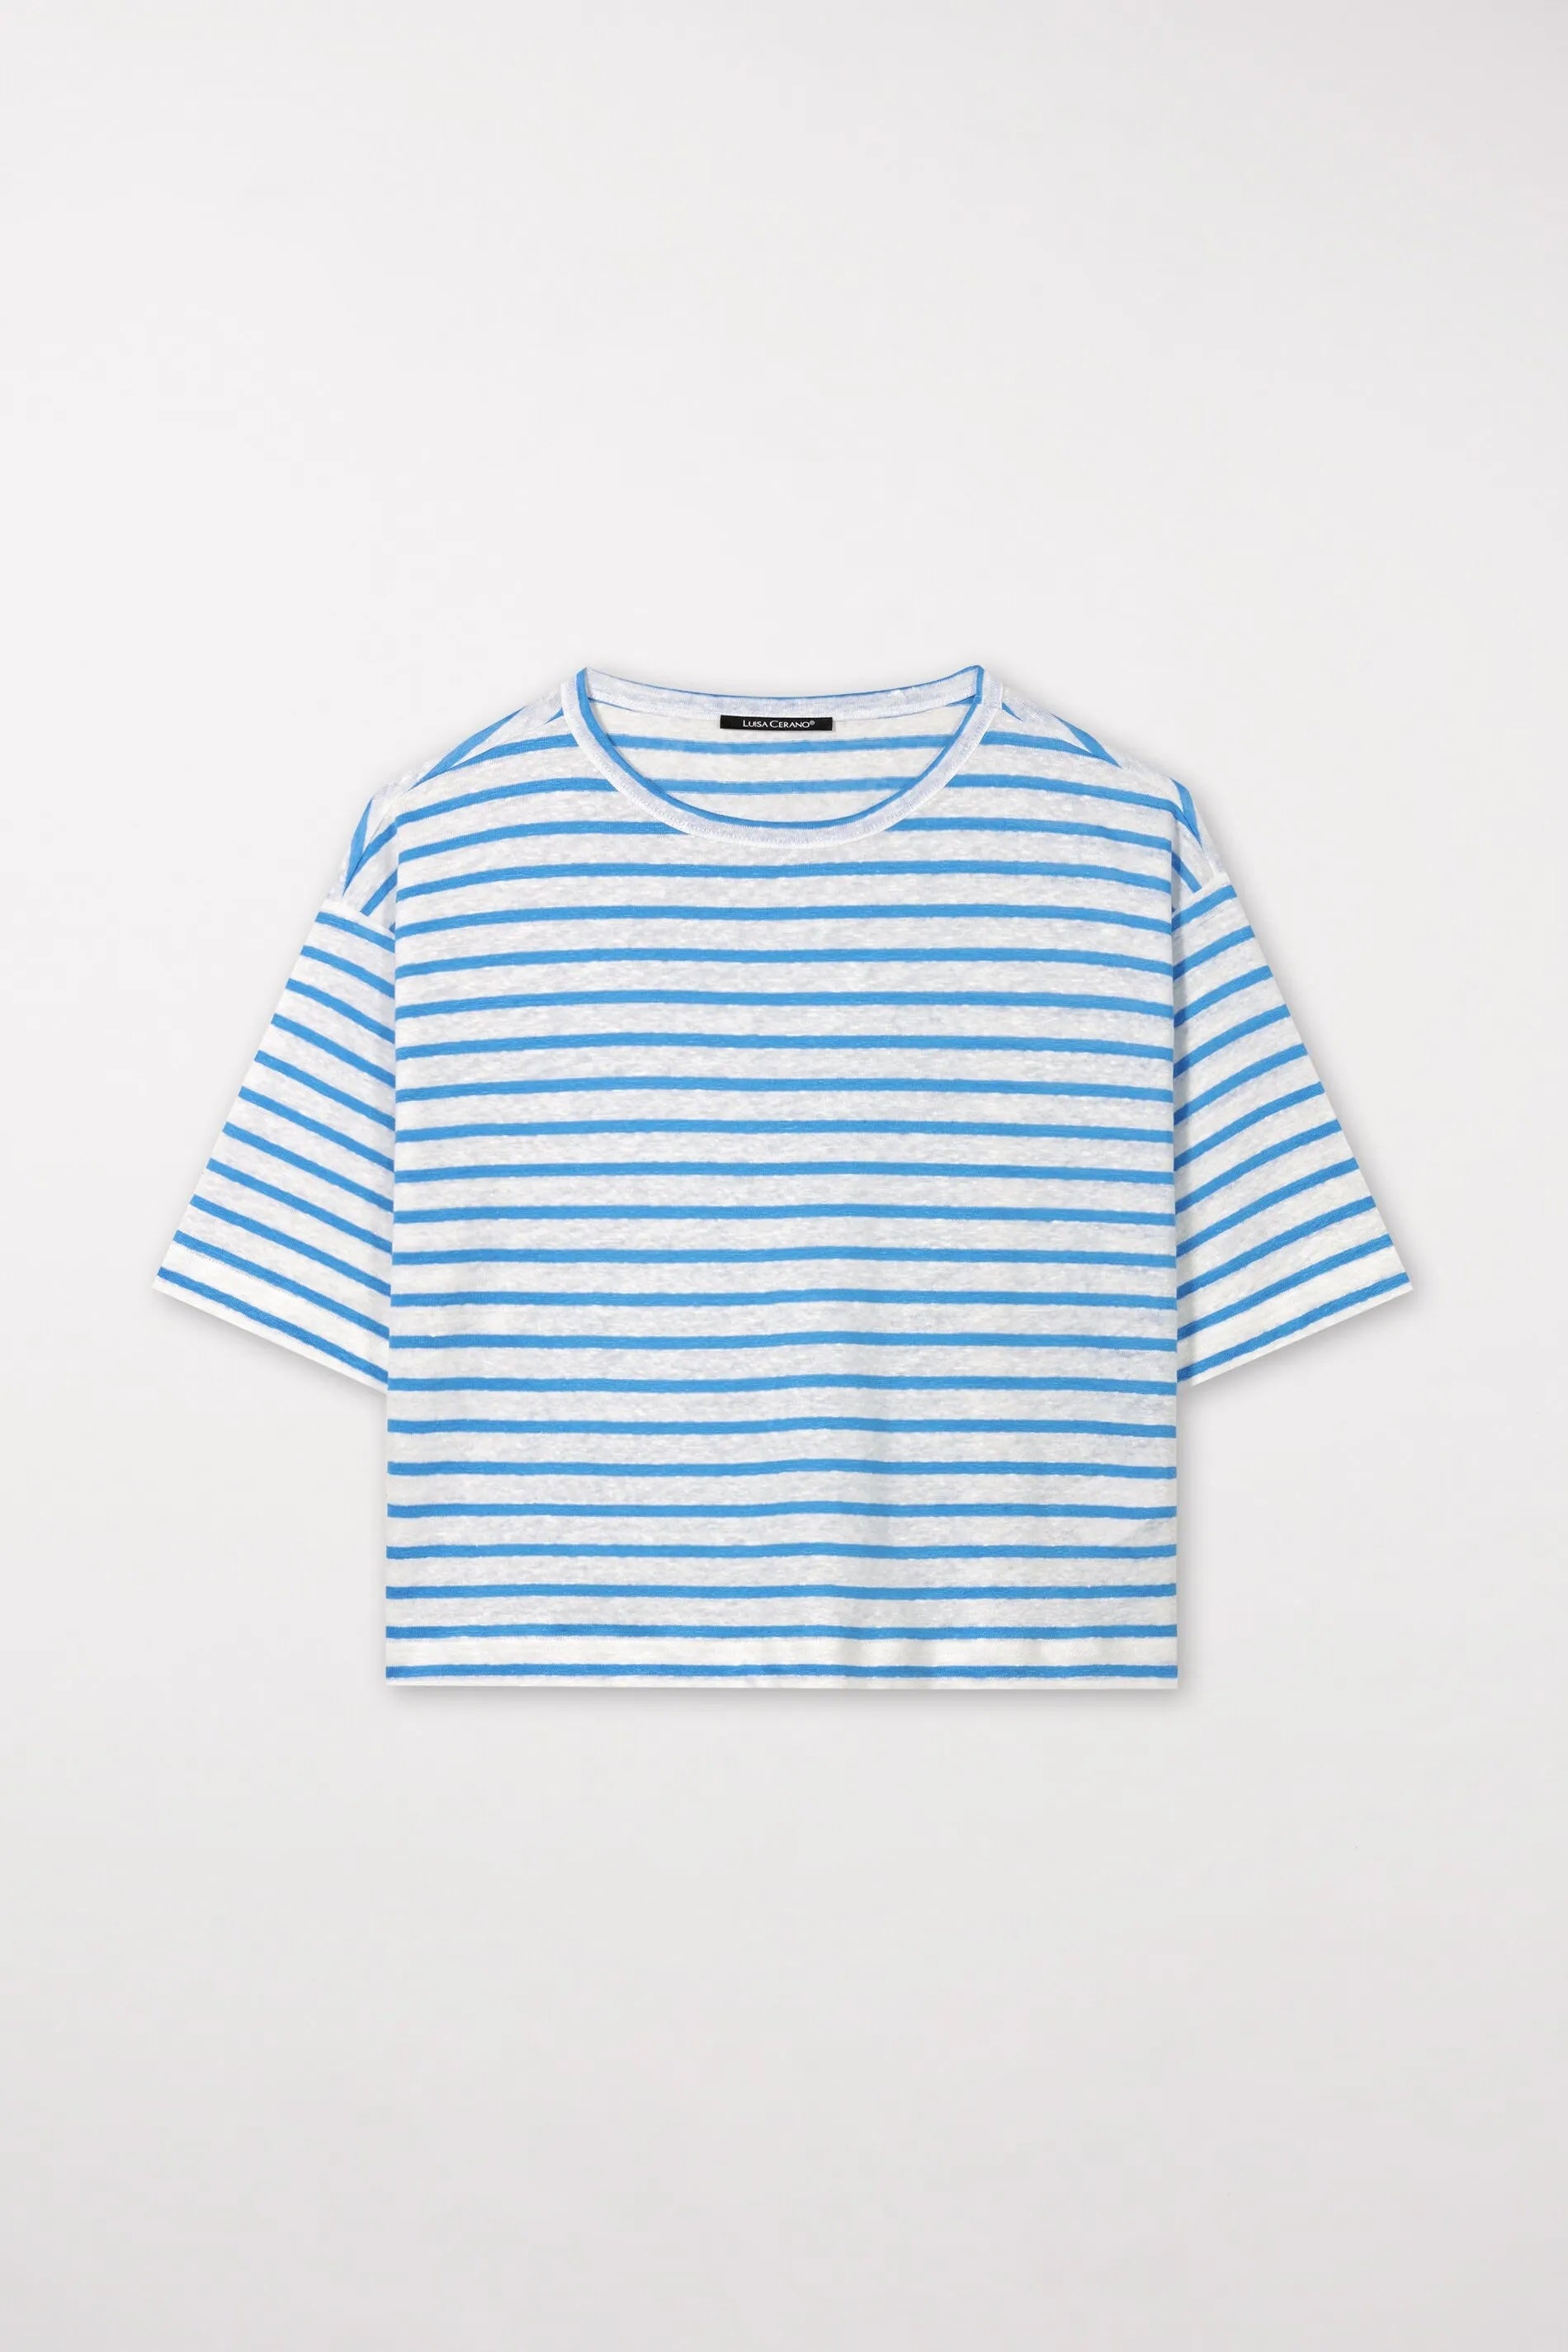 White & Azur Striped Linen T-Shirt